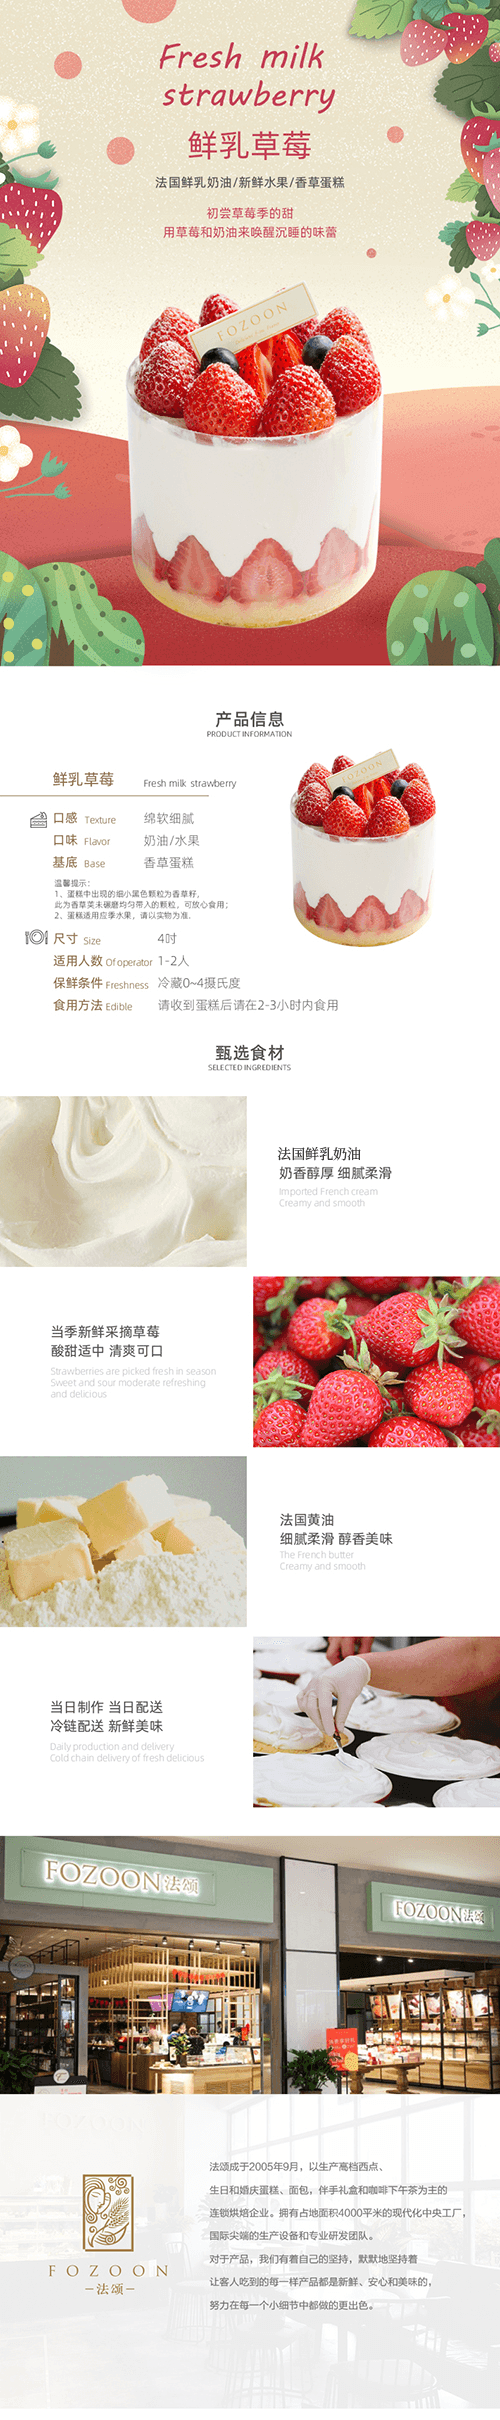 鲜乳草莓.png